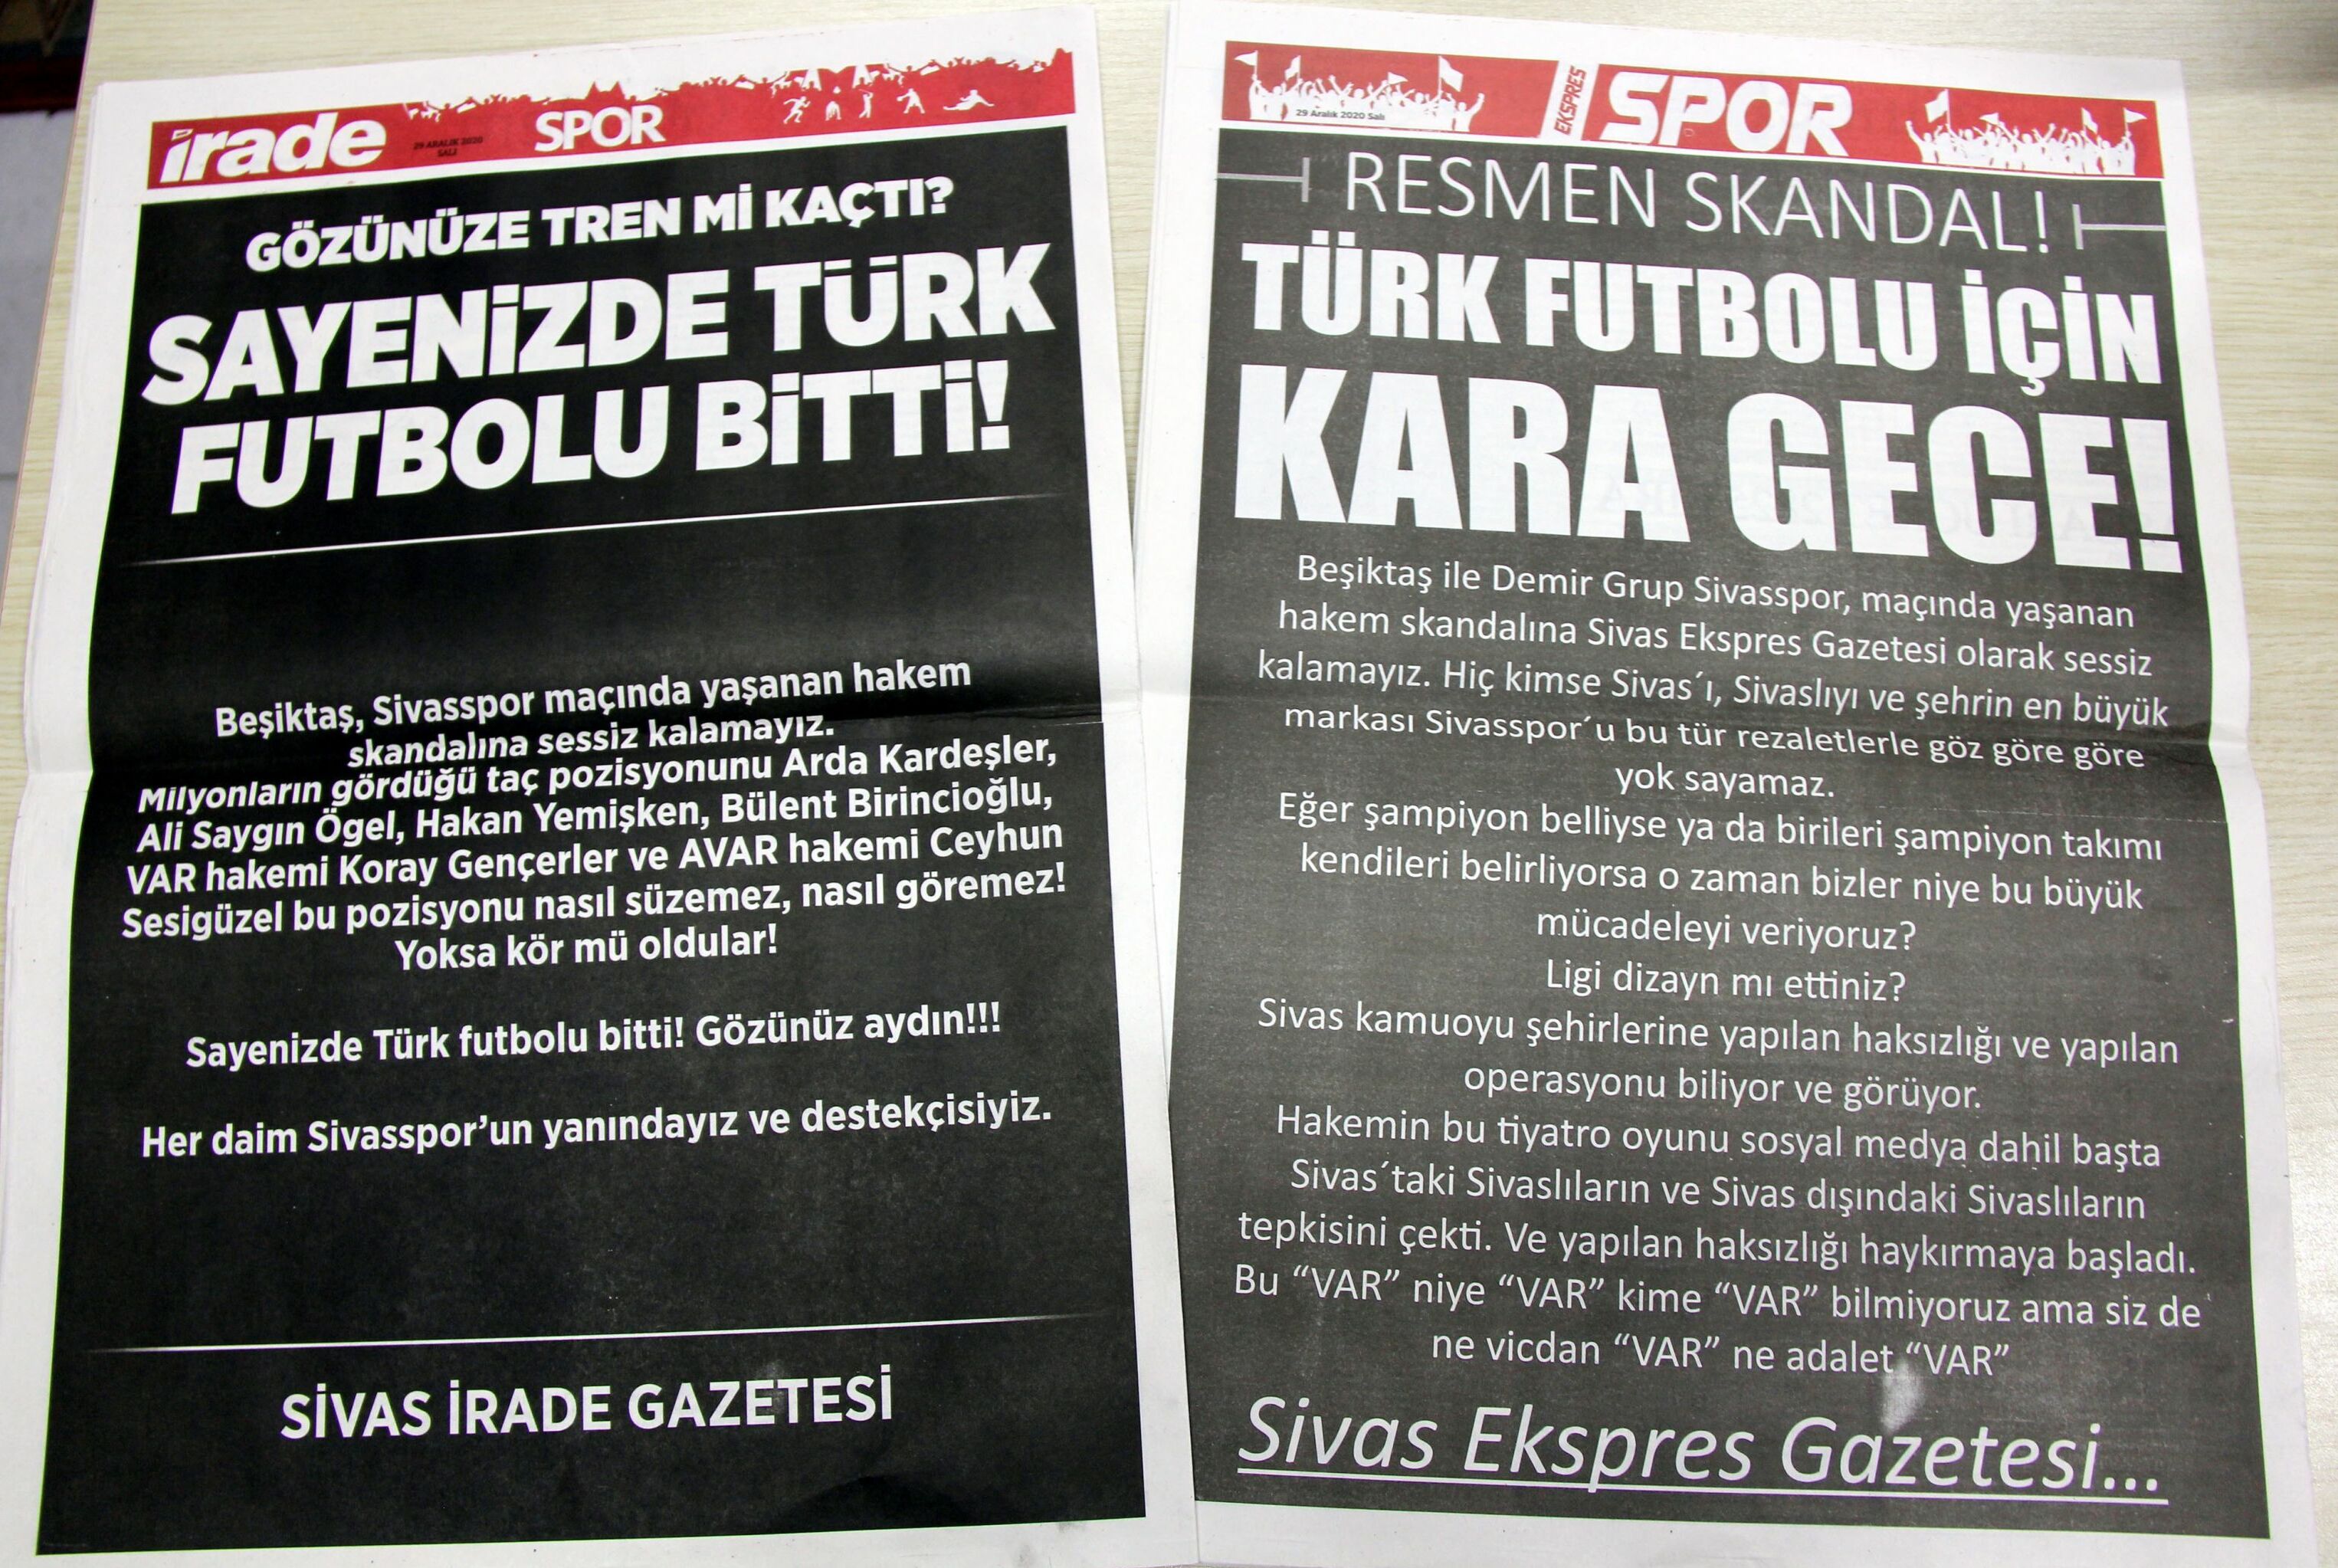 Sivas'ta yayın yapan yerel gazeteler, Beşiktaş-Sivasspor maçındaki hakem kararlarını spor sayfalarını tamamen karartarak protesto etti.